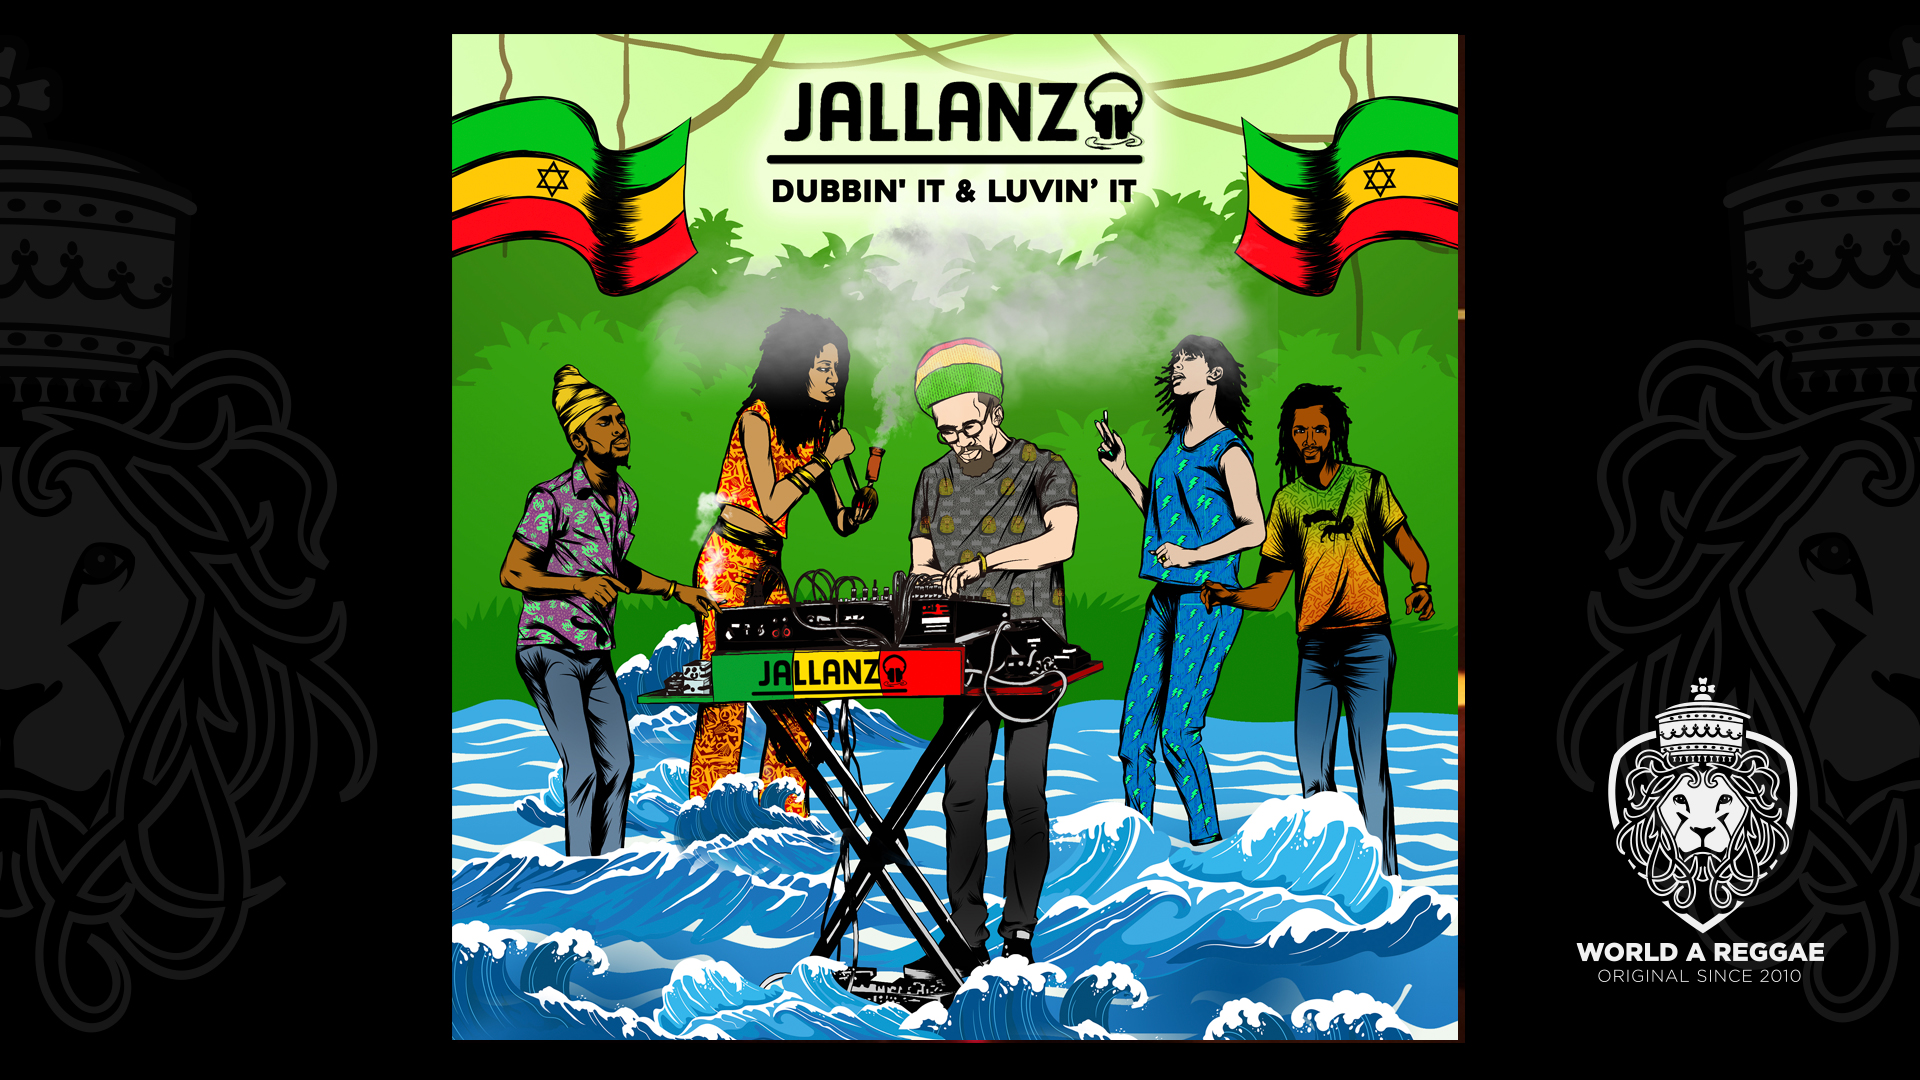 Dubbin’ It & Luvin’ It Jallanzo